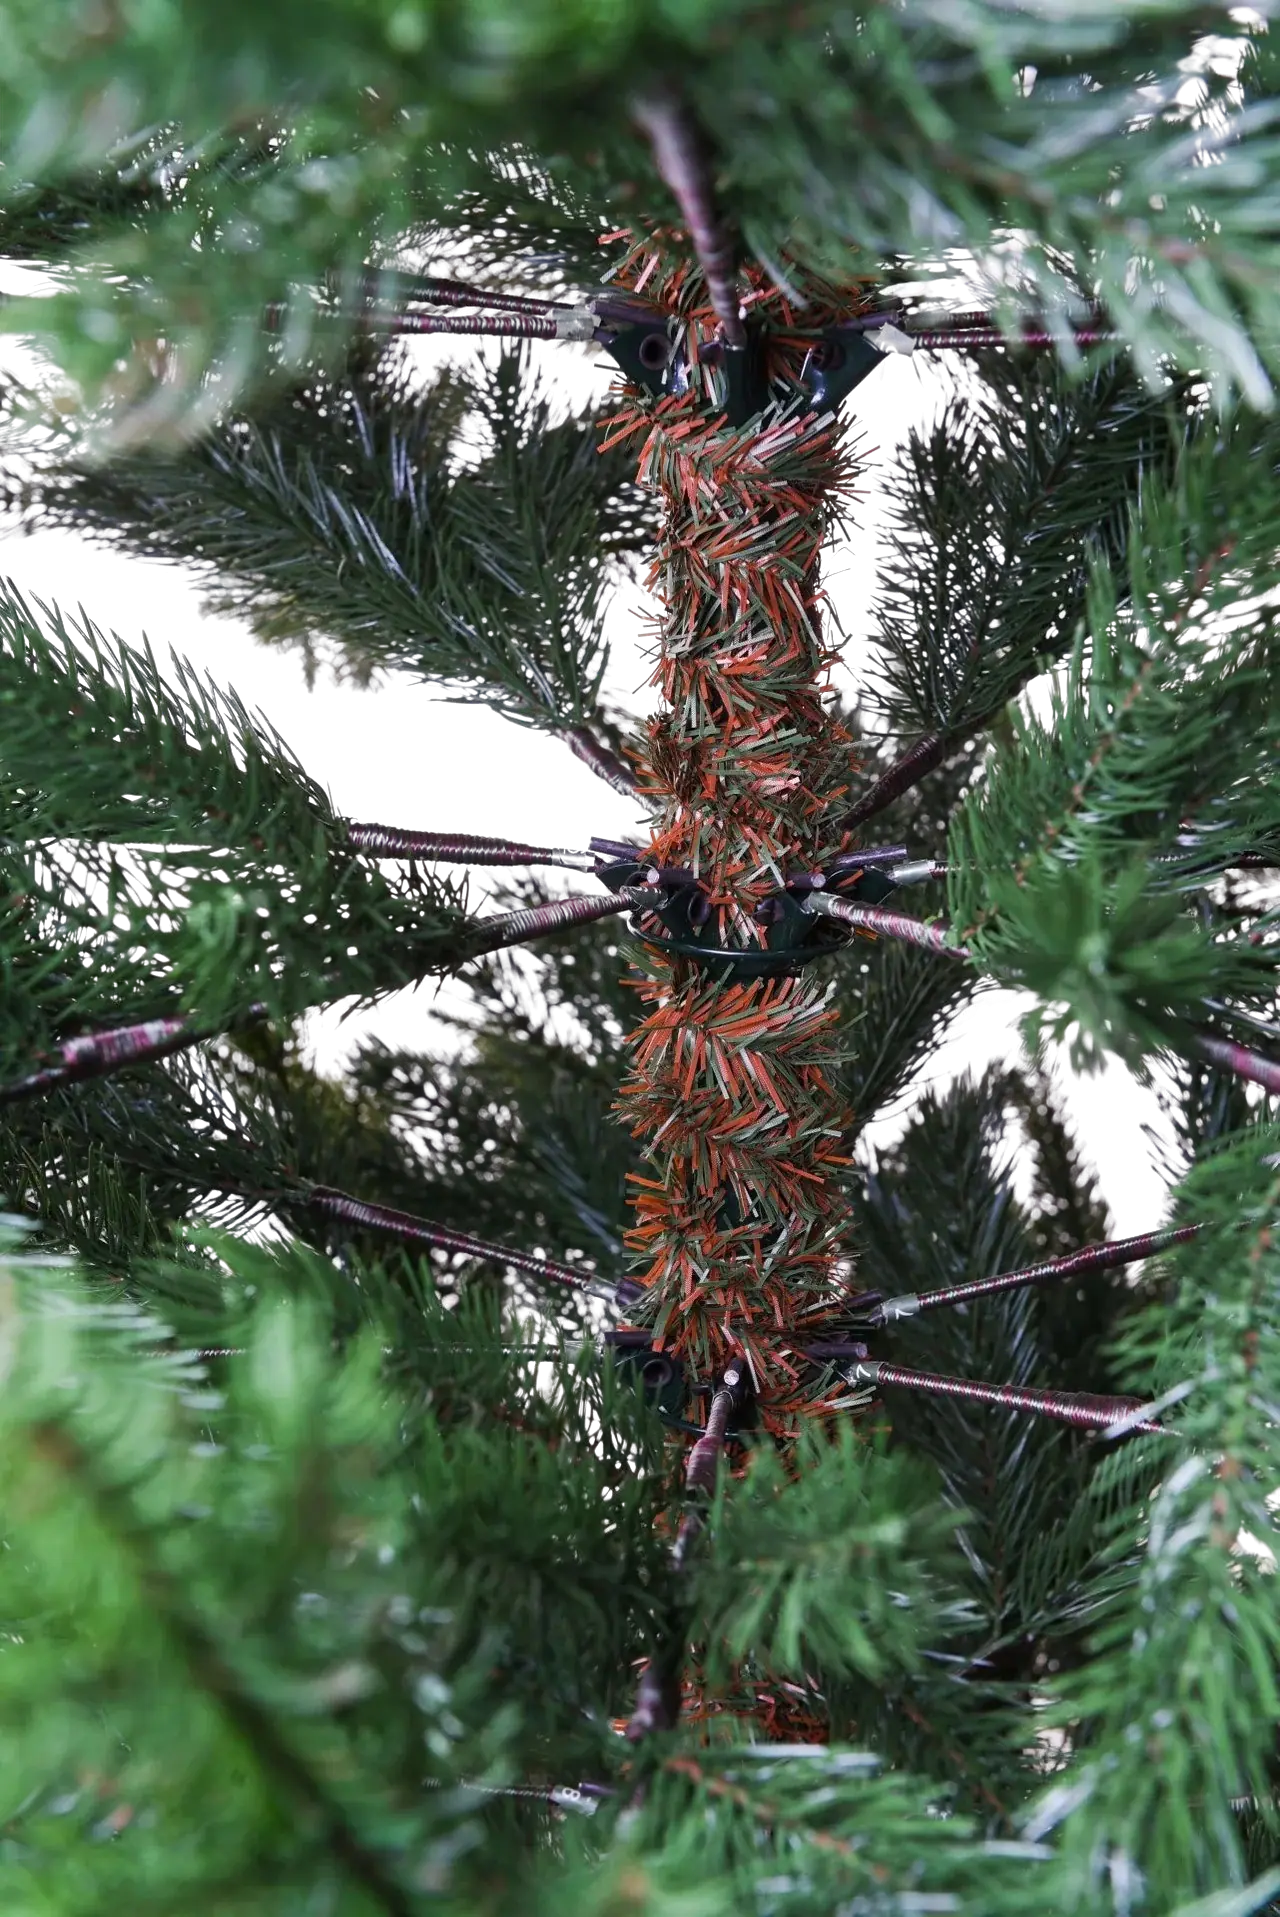 Künstlicher Weihnachtsbaum - Lucian | 150 cm